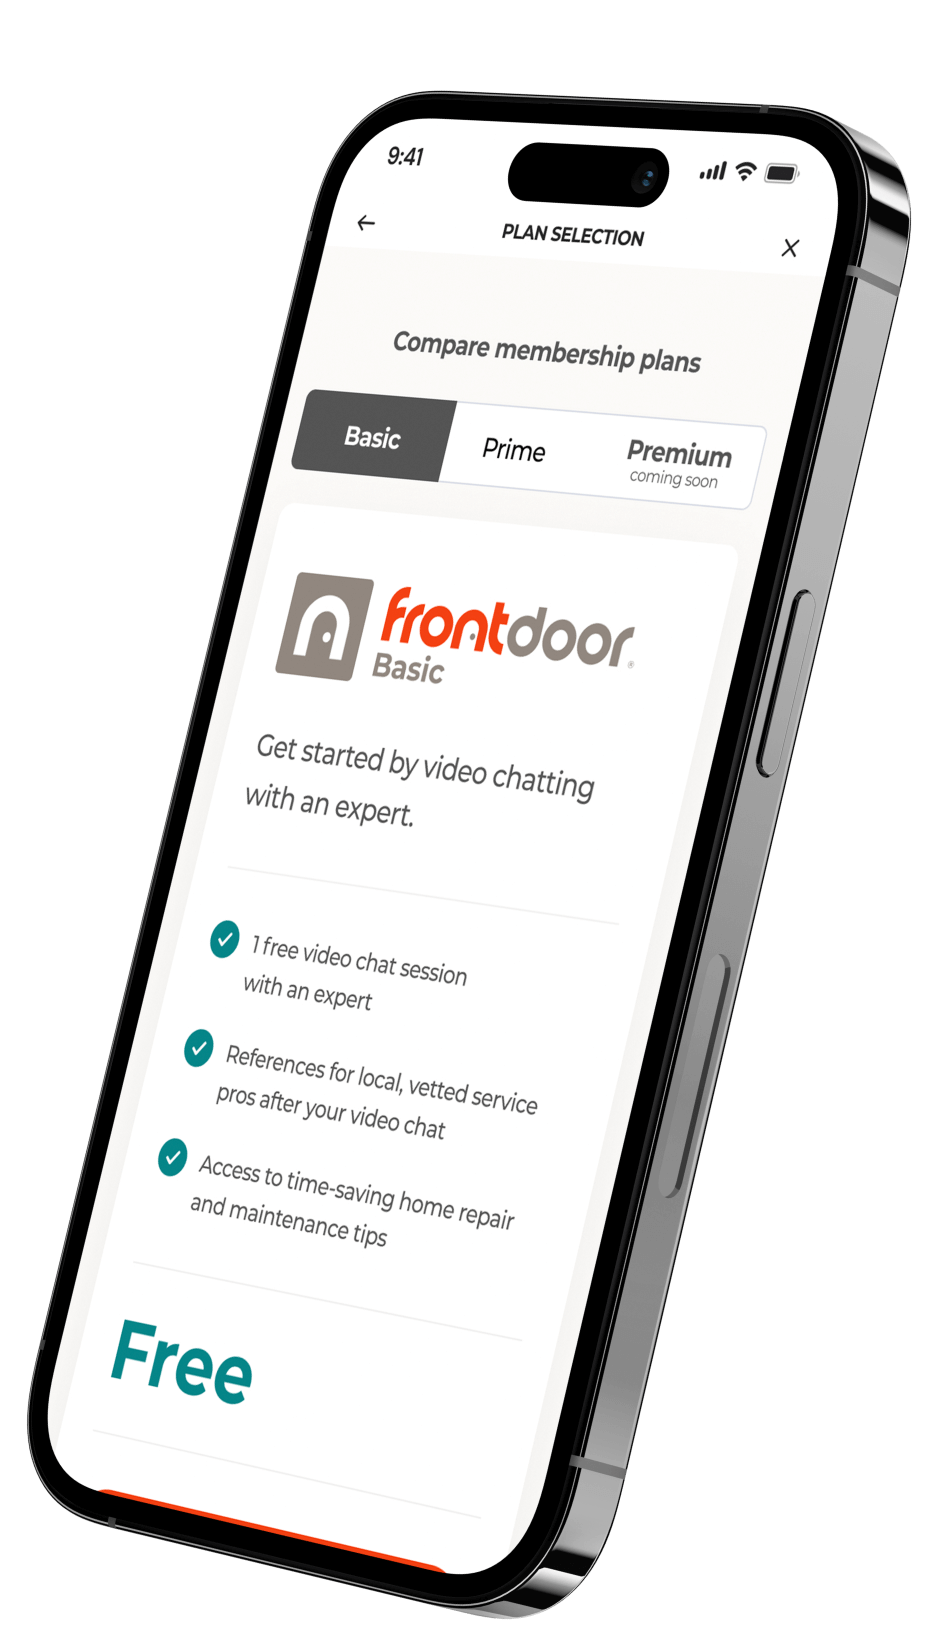 Frontdoor app on mobile phone